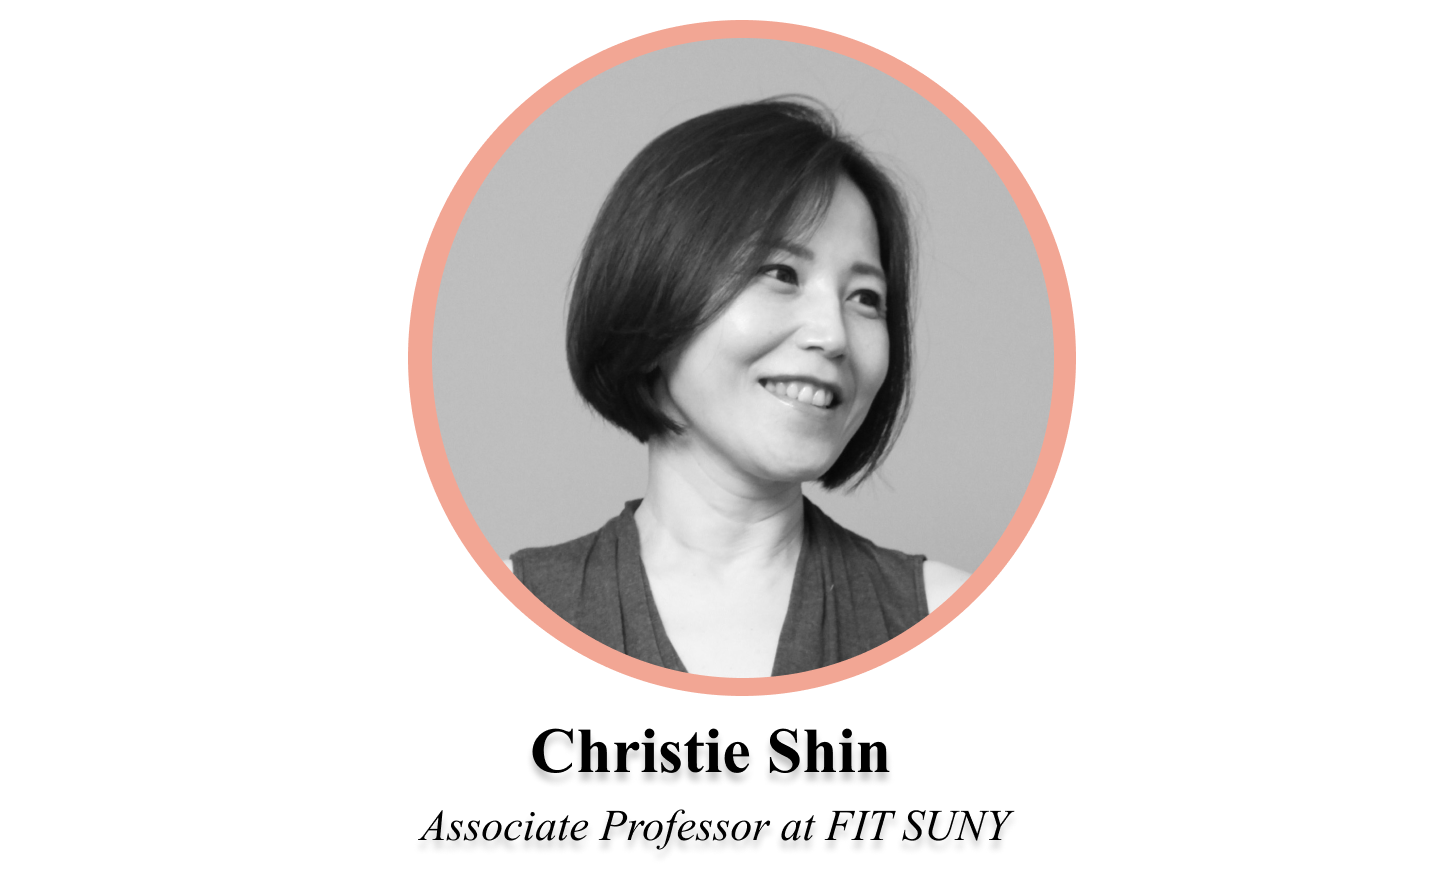 Professor Christie Shin